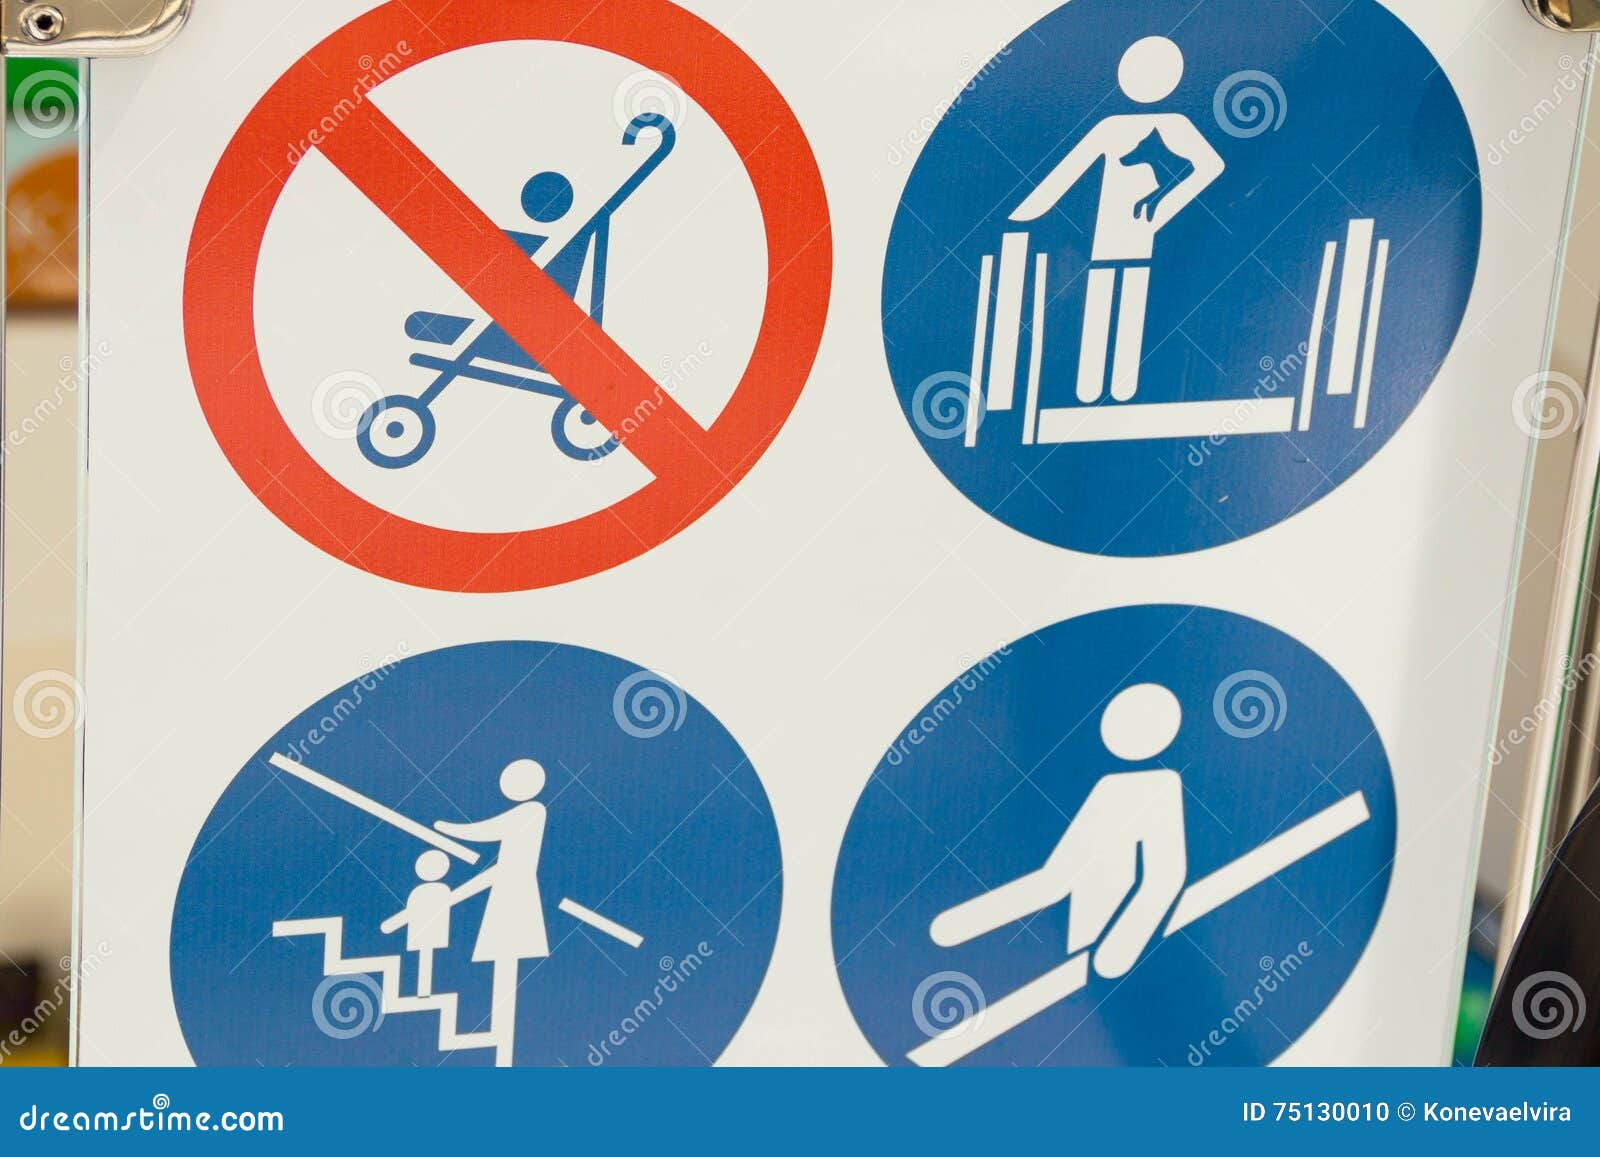 Правила безопасности на эскалаторе. Знаки безопасности на эскалаторе. Знак поведения на эскалаторе. Предупреждающие знаки на эскалаторе в метро. Предупреждающие наклейки на эскалатор.